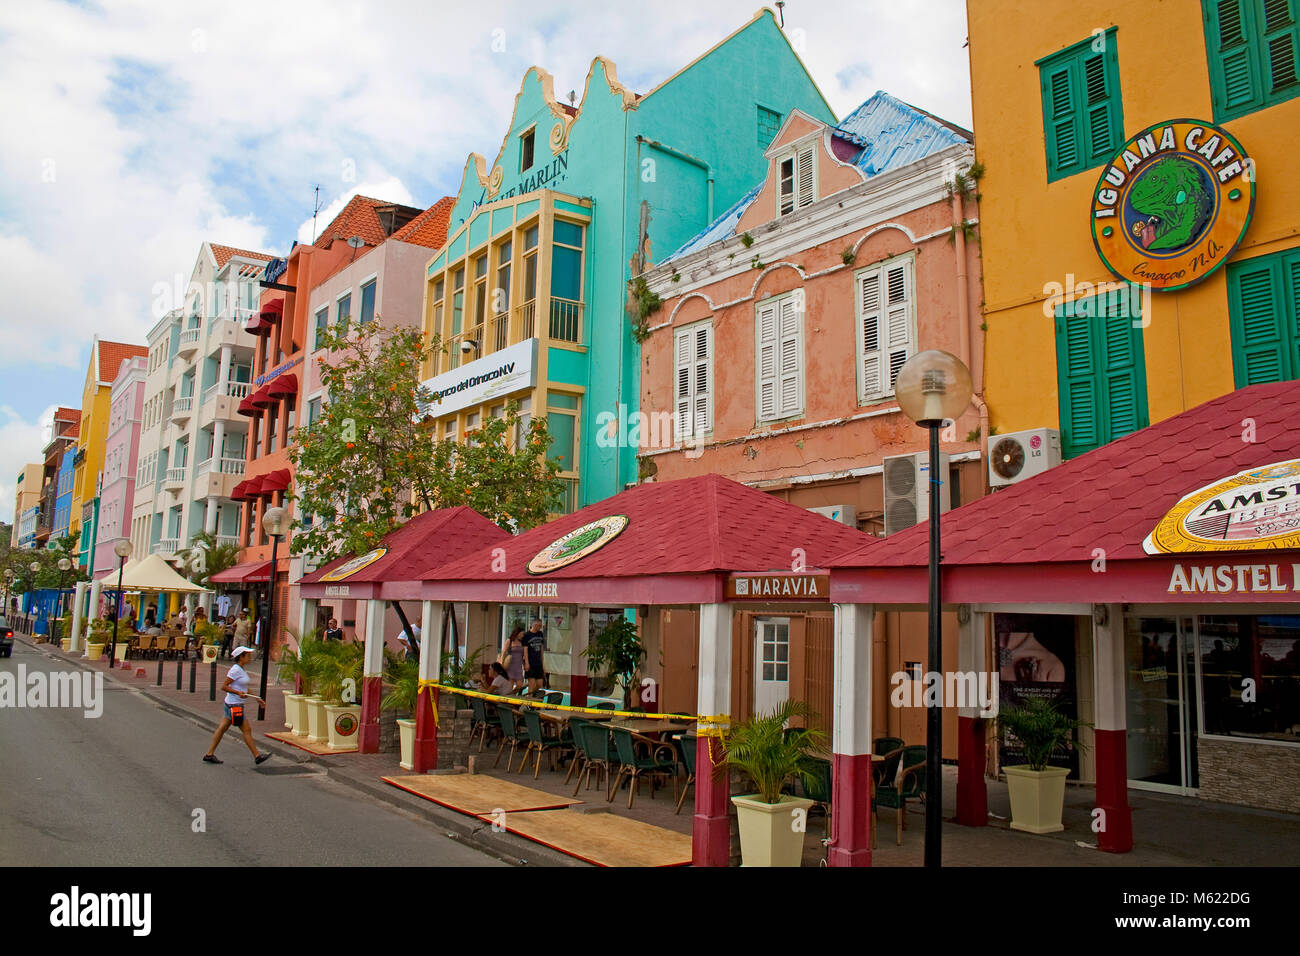 À l'arcade commerciale quartier Punda, bâtiments coloniaux historiques colorés, Willemstad, Curaçao, Antilles, Caraïbes, mer des Caraïbes Banque D'Images